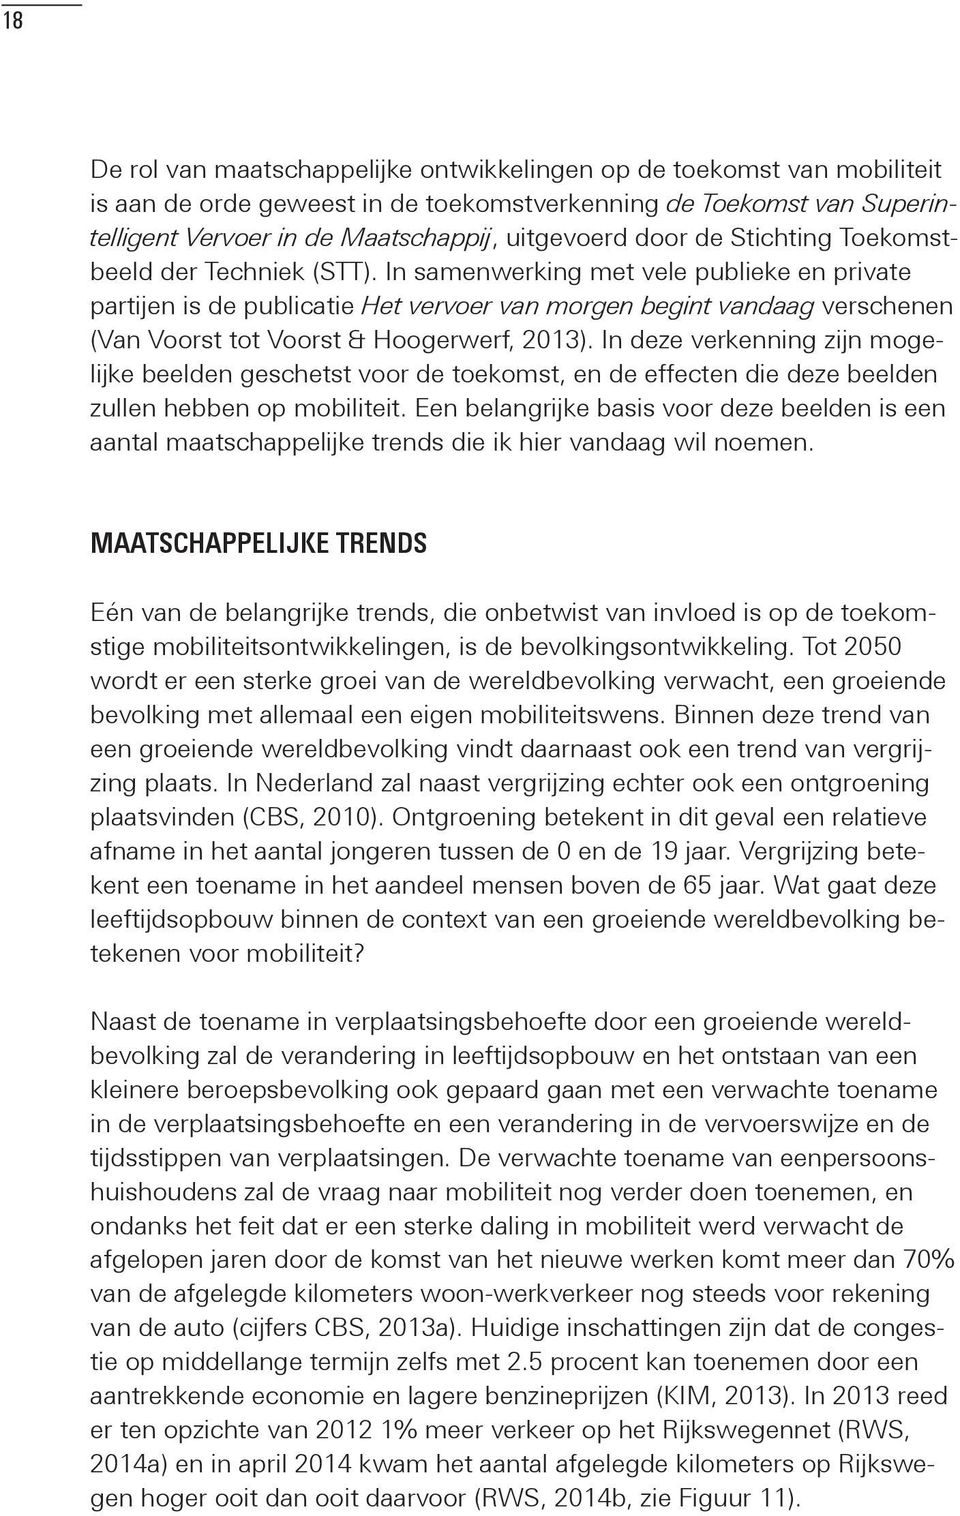 In samenwerking met vele publieke en private partijen is de publicatie Het vervoer van morgen begint vandaag verschenen (Van Voorst tot Voorst & Hoogerwerf, 2013).